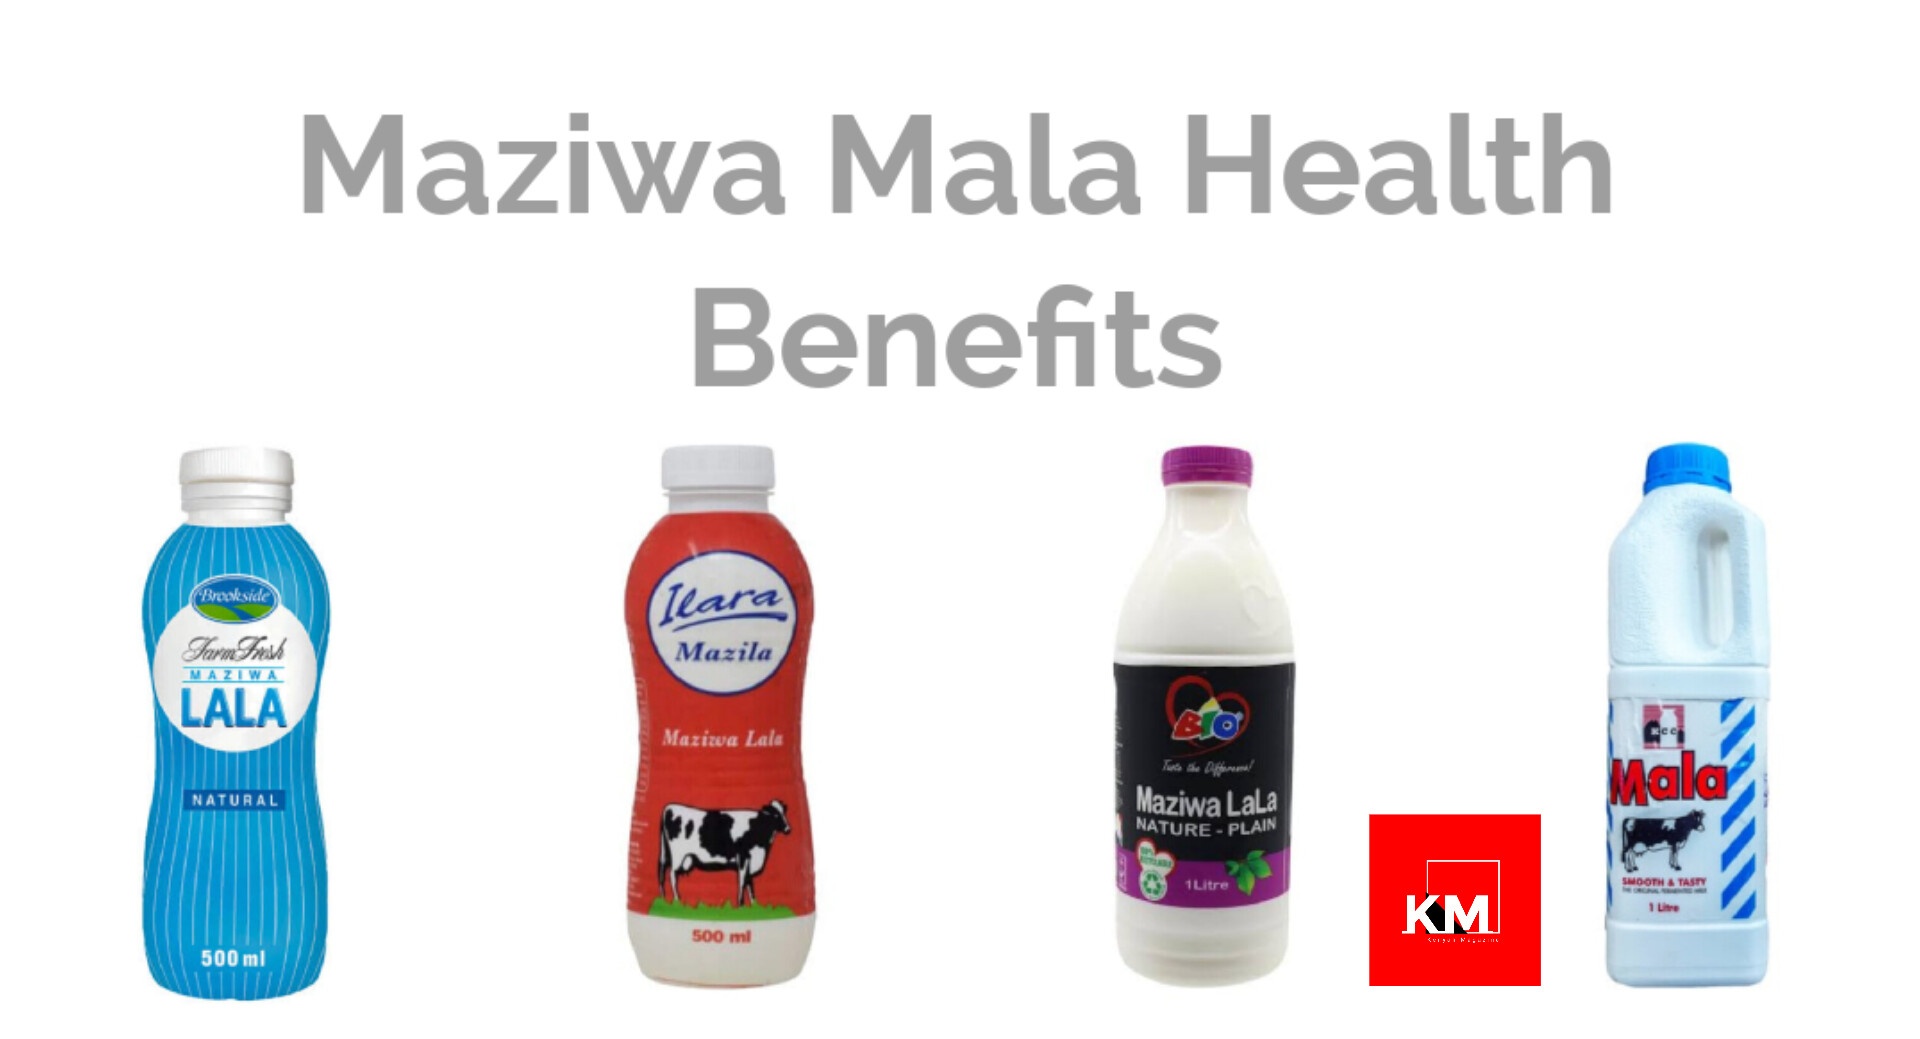 Benefits of Maziwa mala